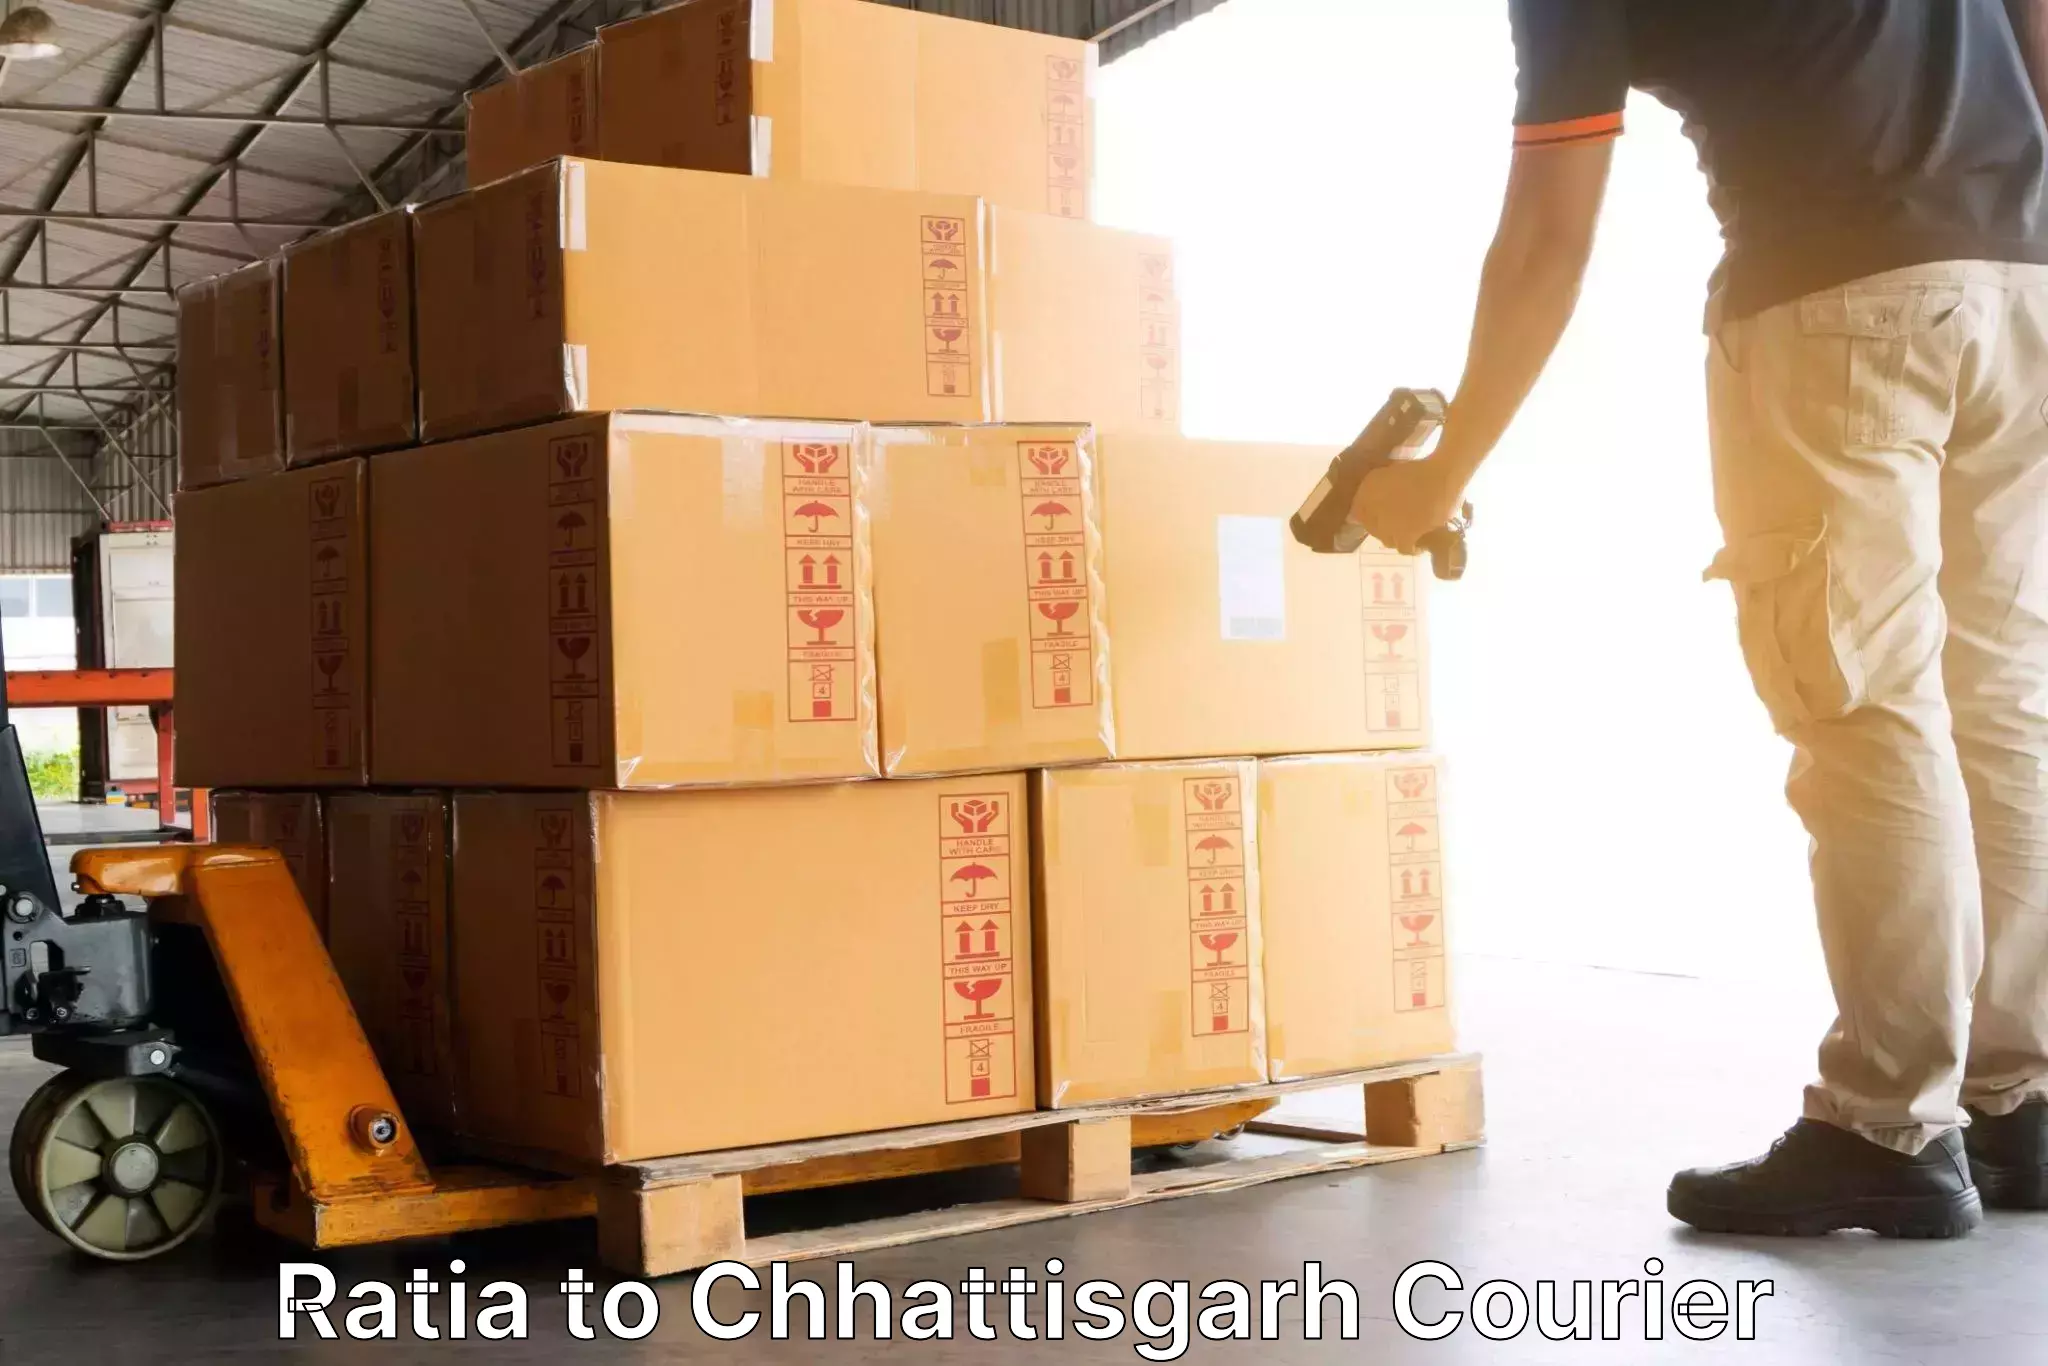 Speedy delivery service in Ratia to Korea Chhattisgarh